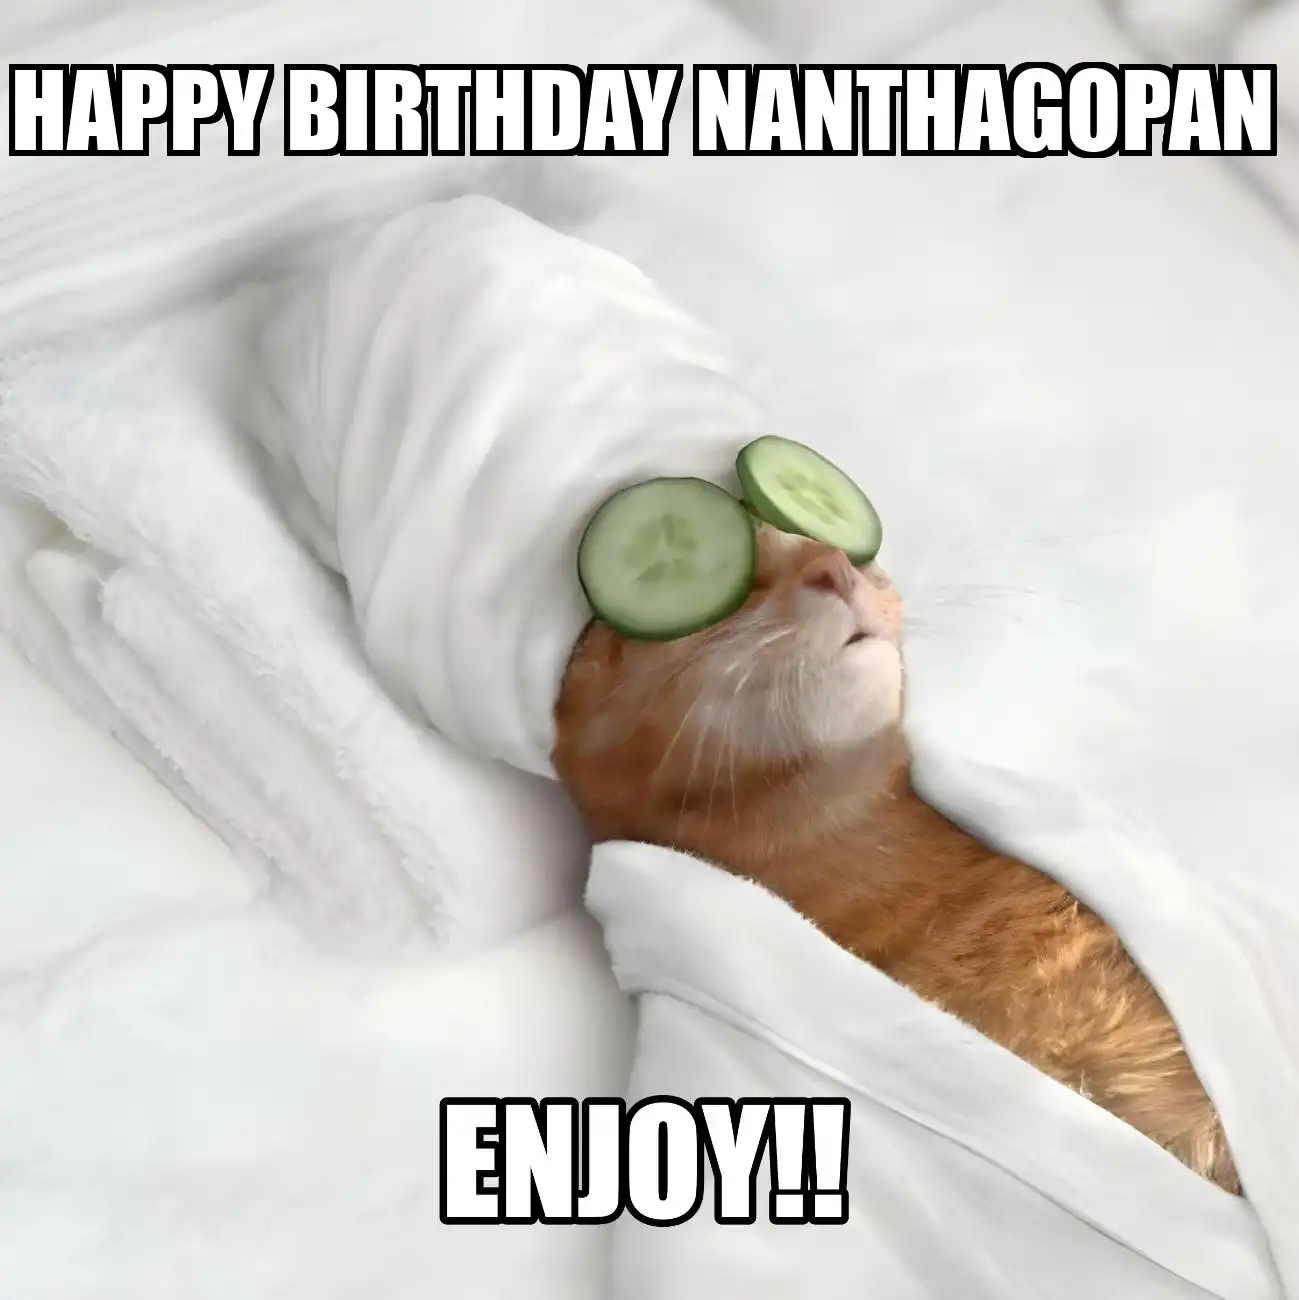 Happy Birthday Nanthagopan Enjoy Cat Meme